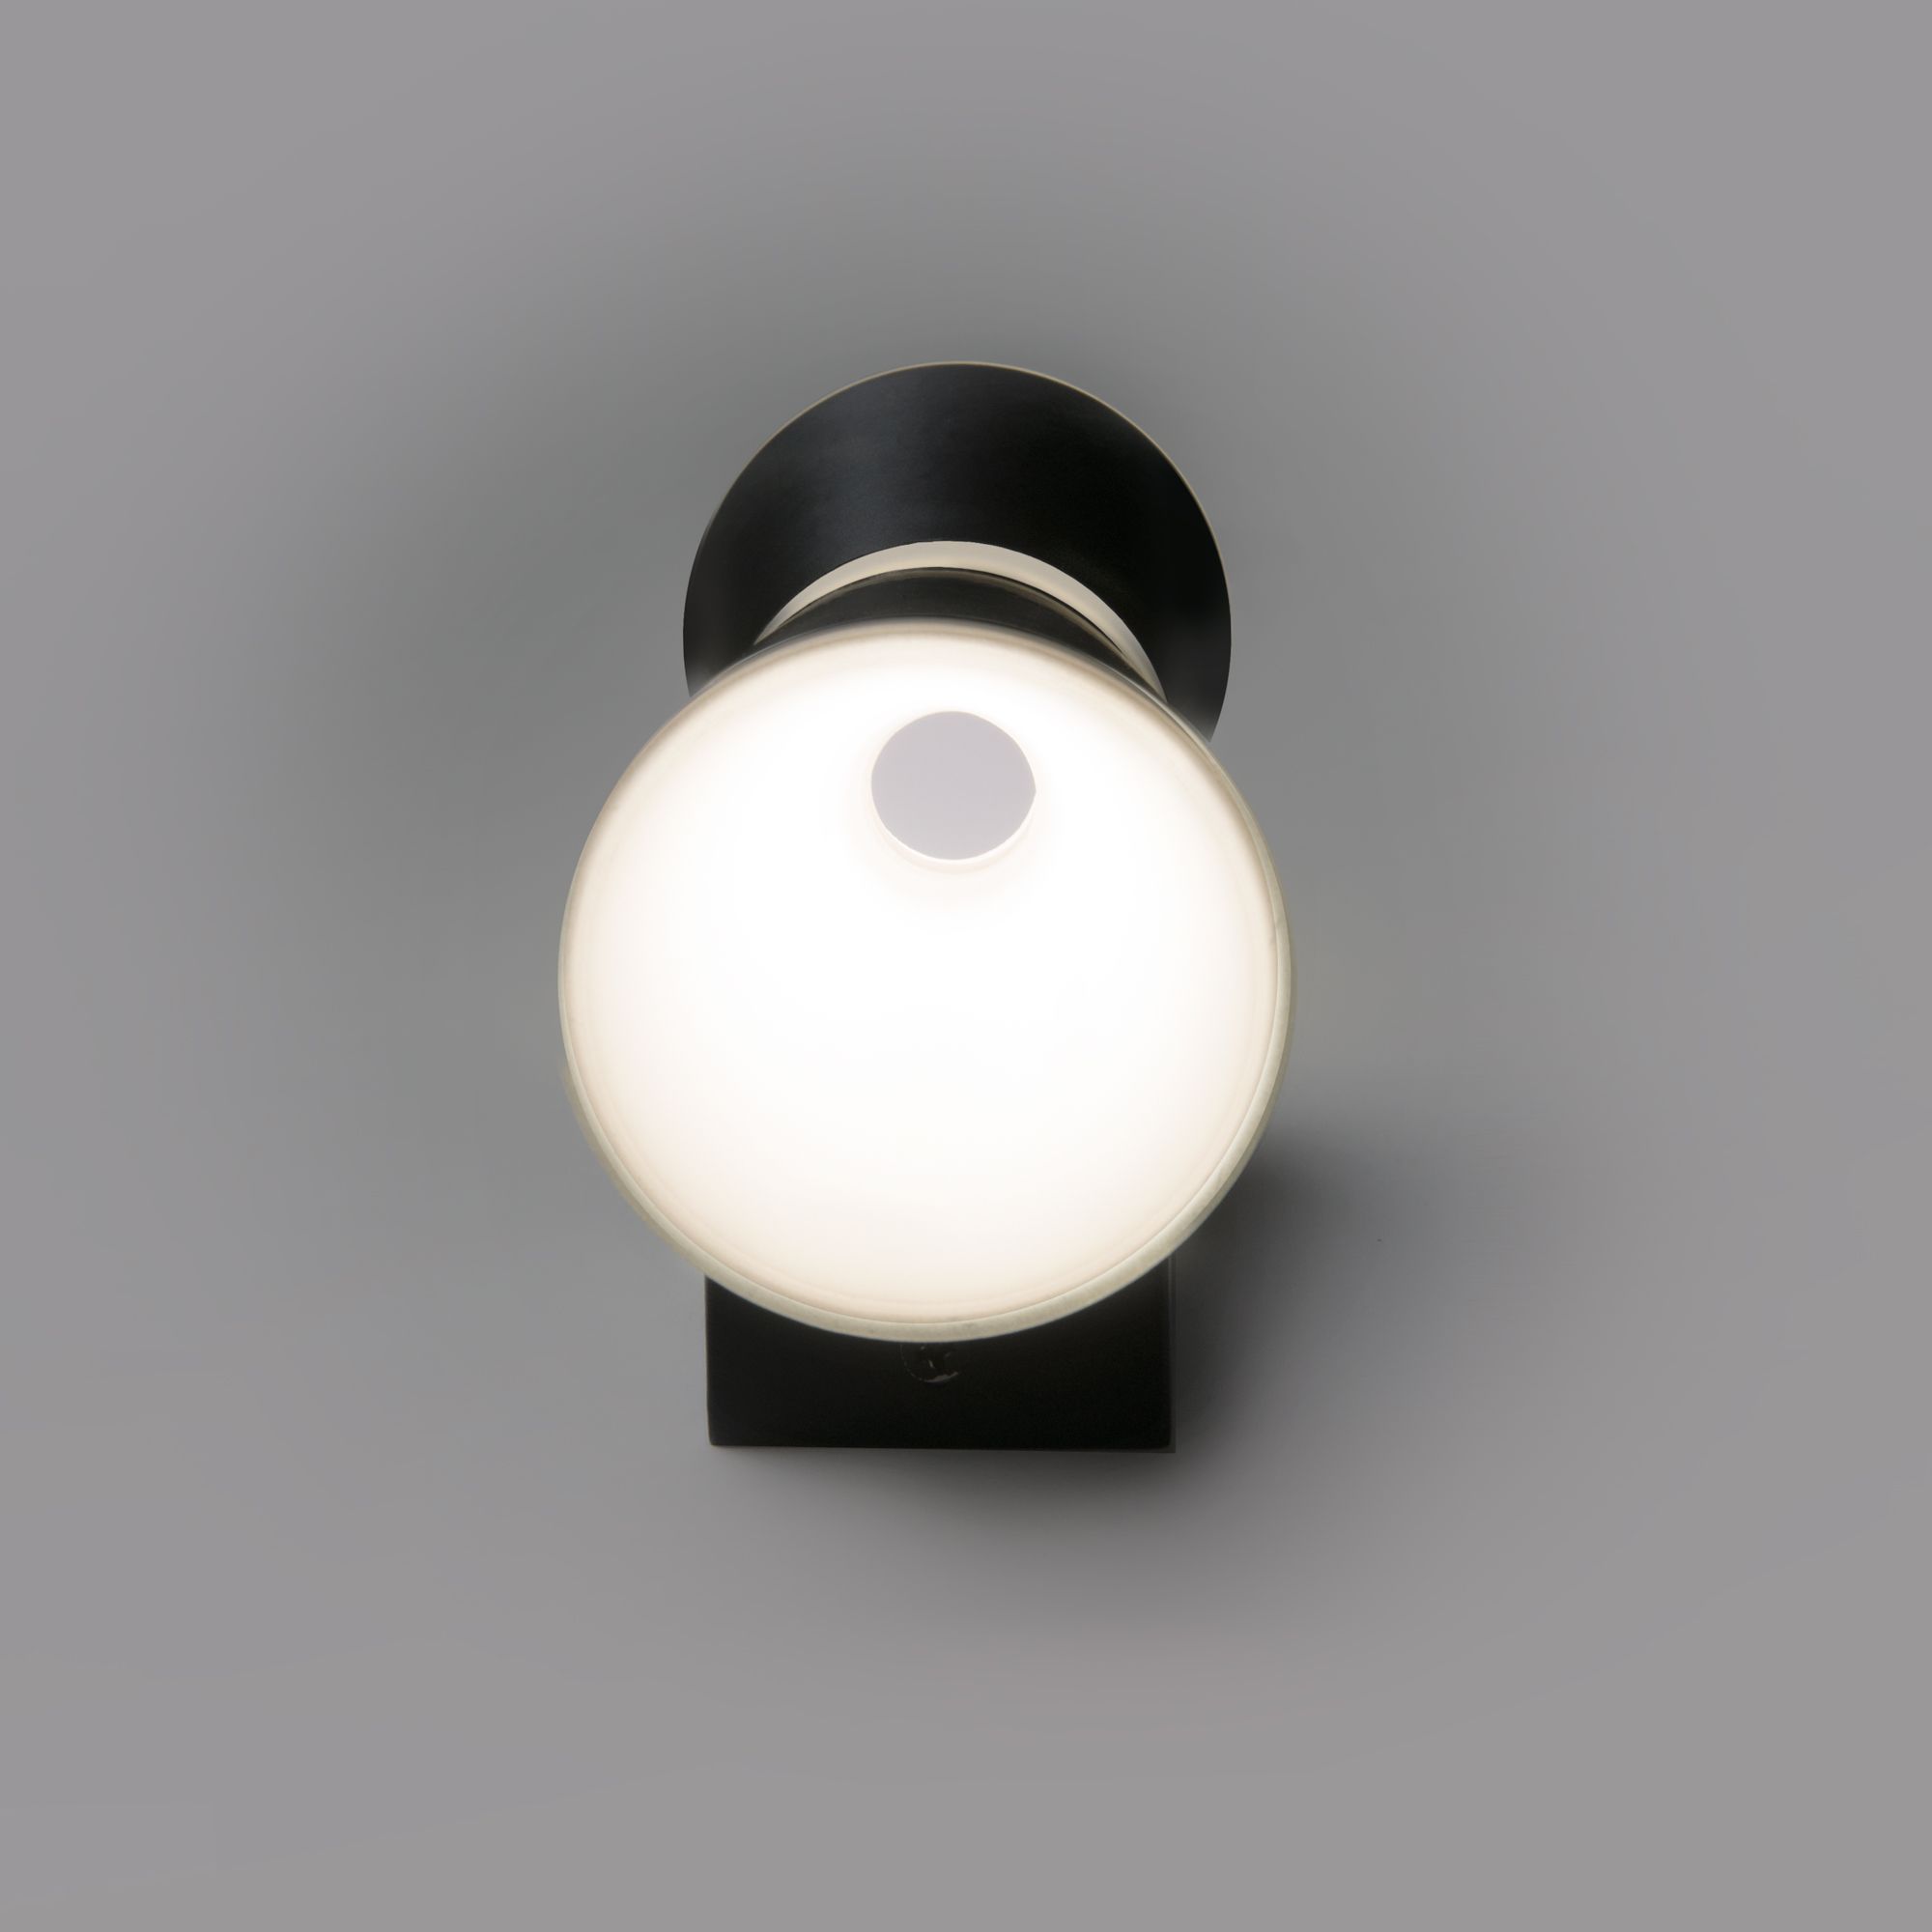 Настенный светодиодный светильник Viare LED Elektrostandard Viare MRL LED 1003 черный. Фото 3